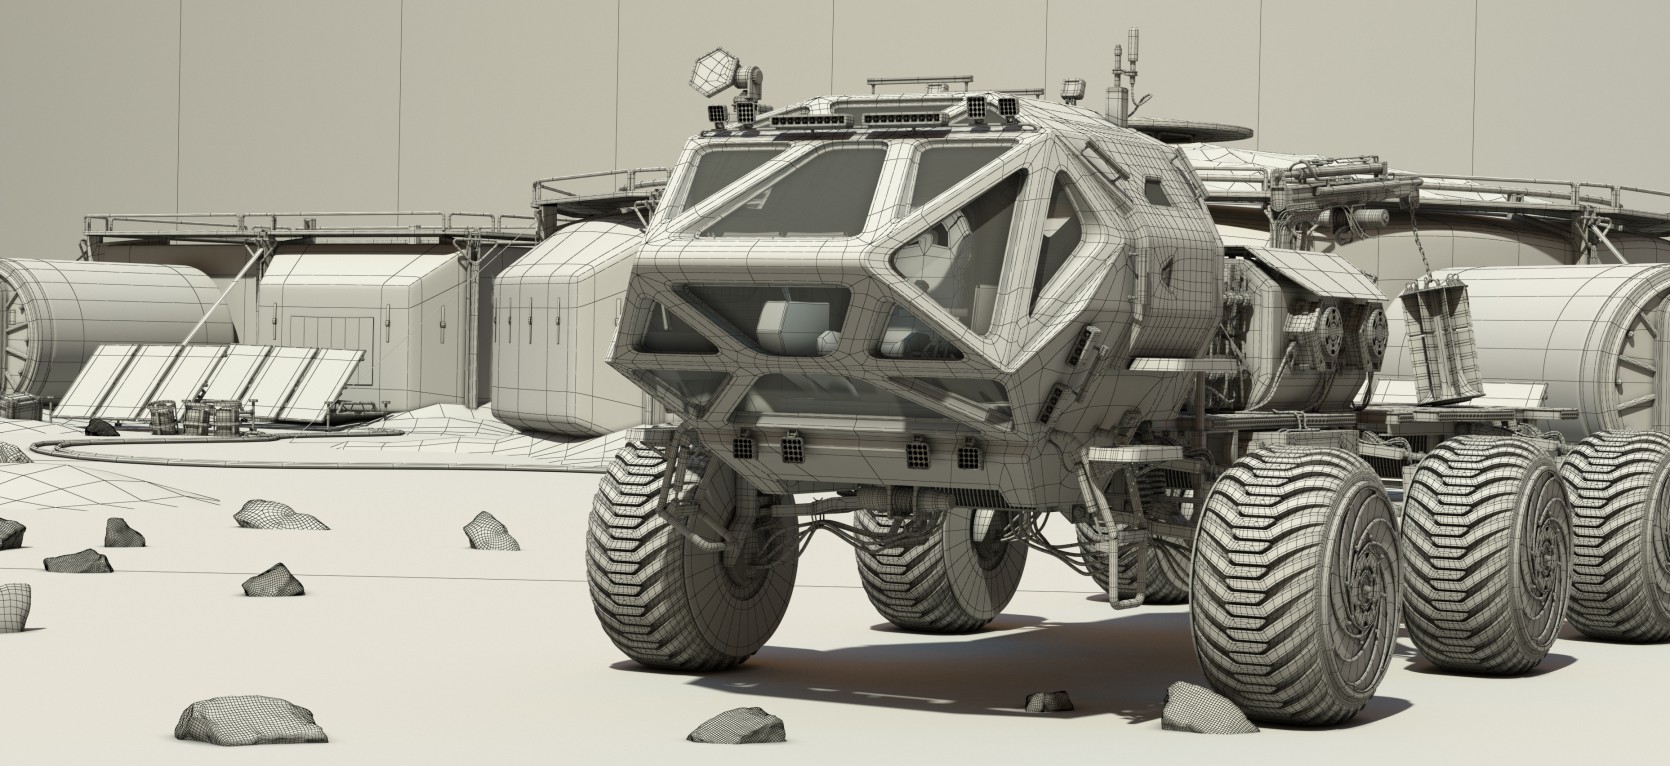 The Martian Rover 2.